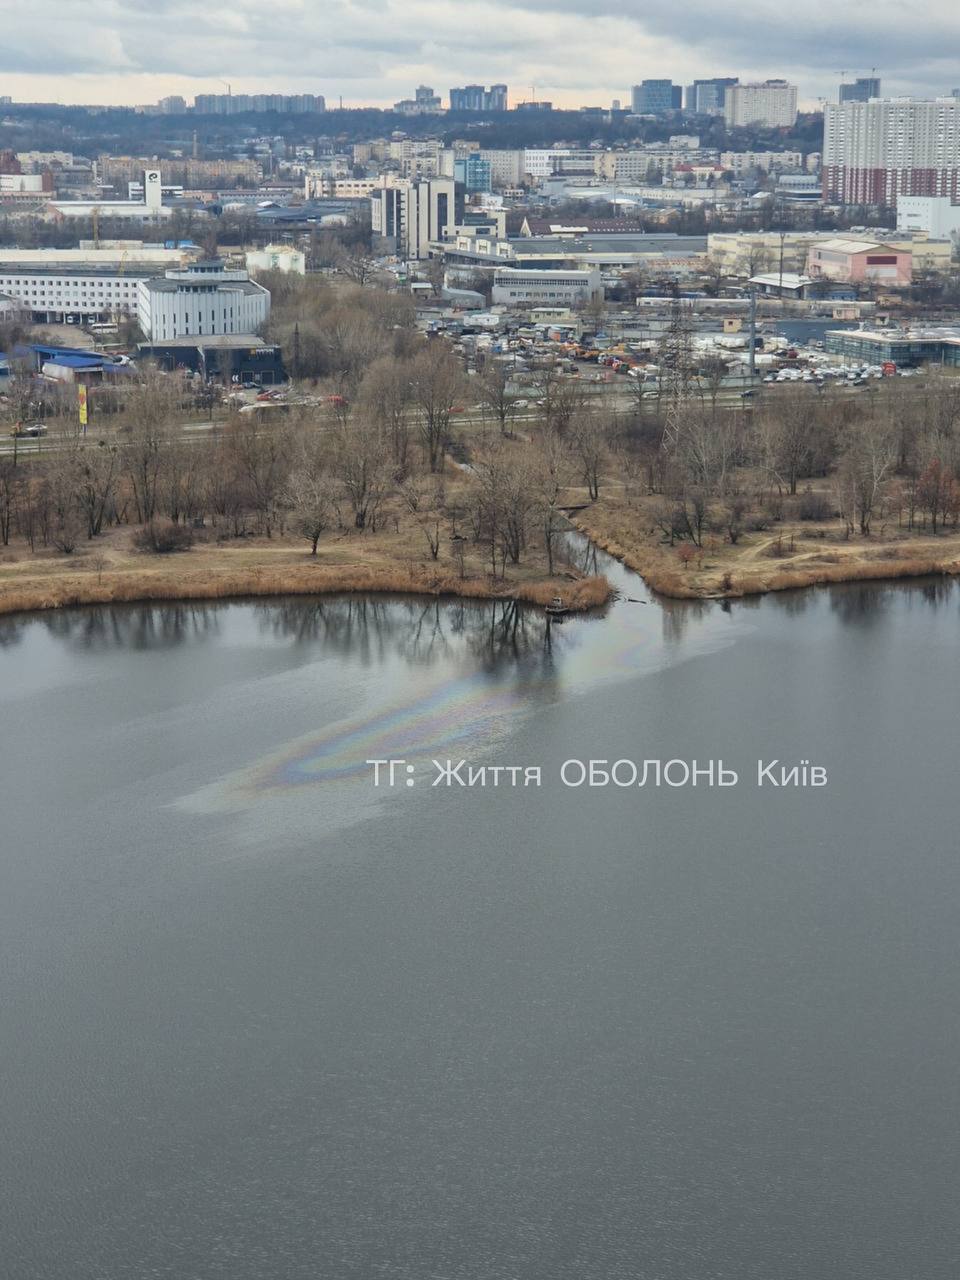 В Киеве неизвестные слили нефтепродукты в озеро на Оболони. Фото и подробности